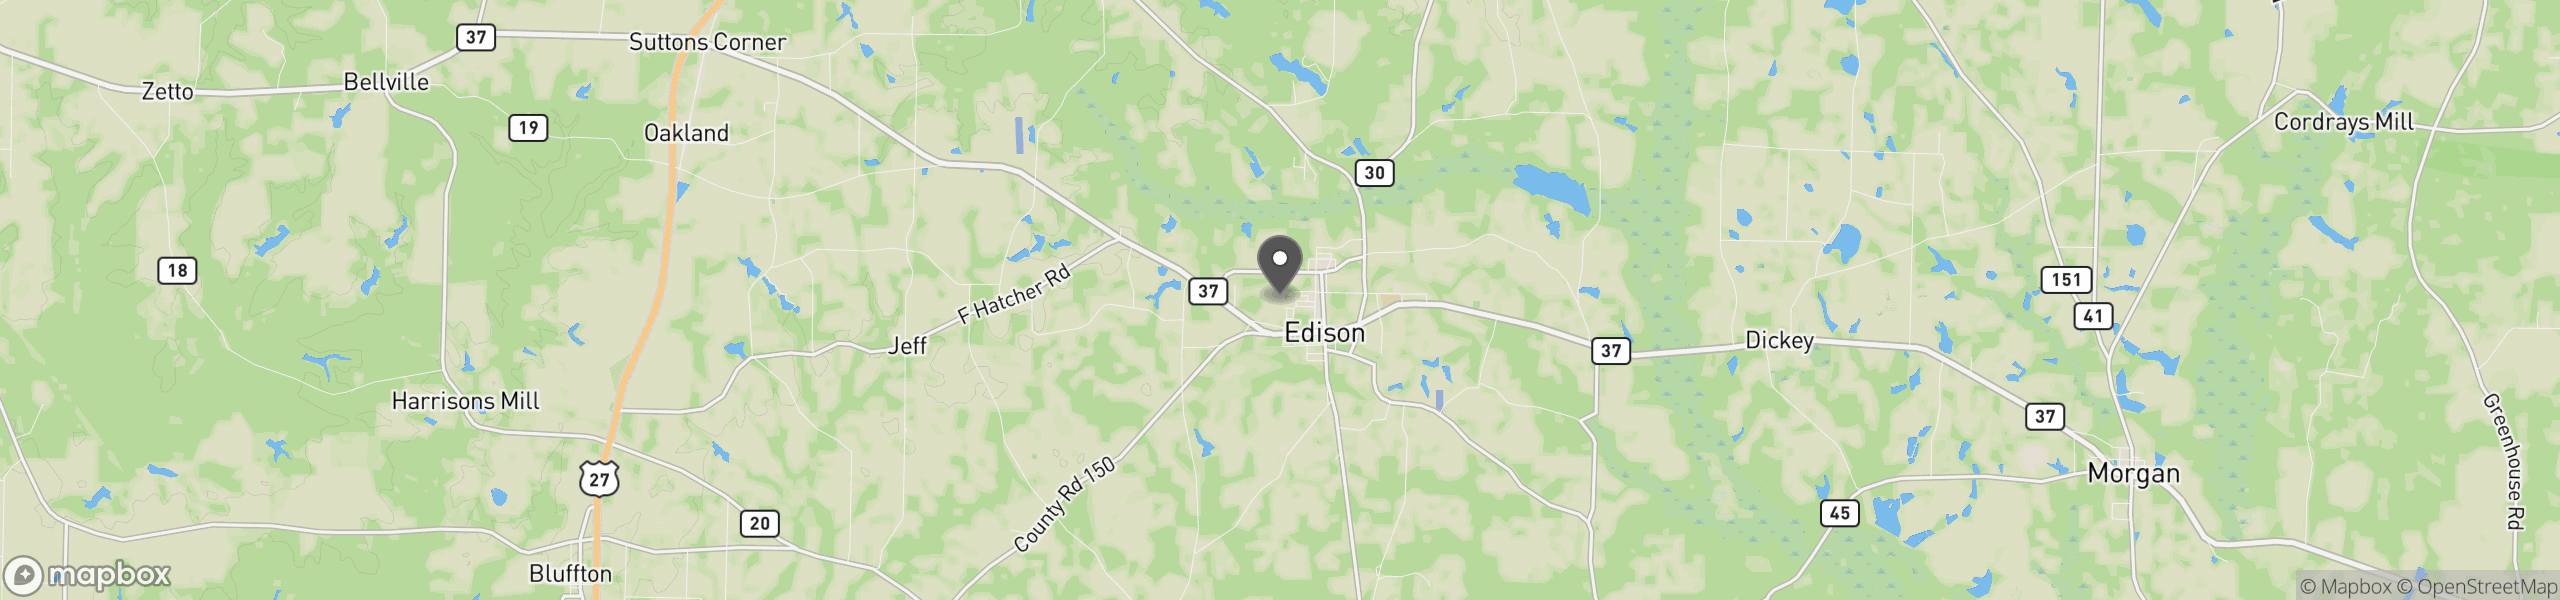 Edison, GA 39846